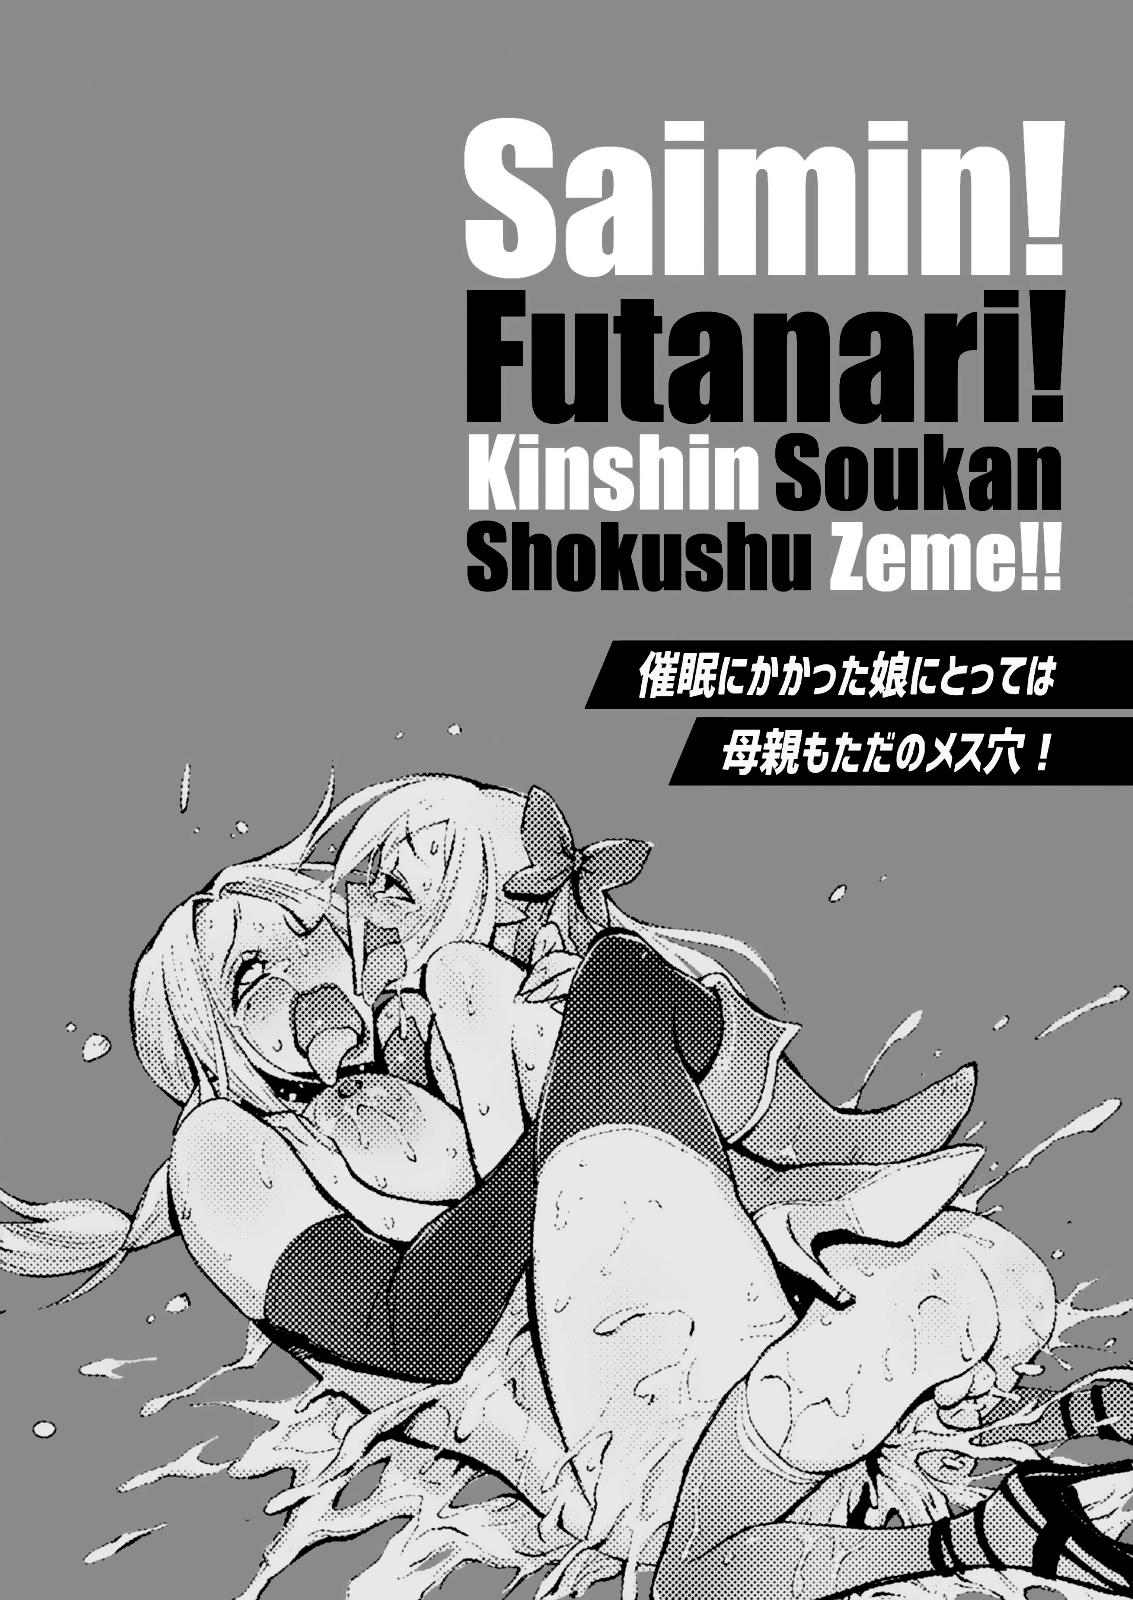 Emo Saimin! Futanari! Kinshin Soukan Shokushu Zeme!! - Original Hung - Page 2